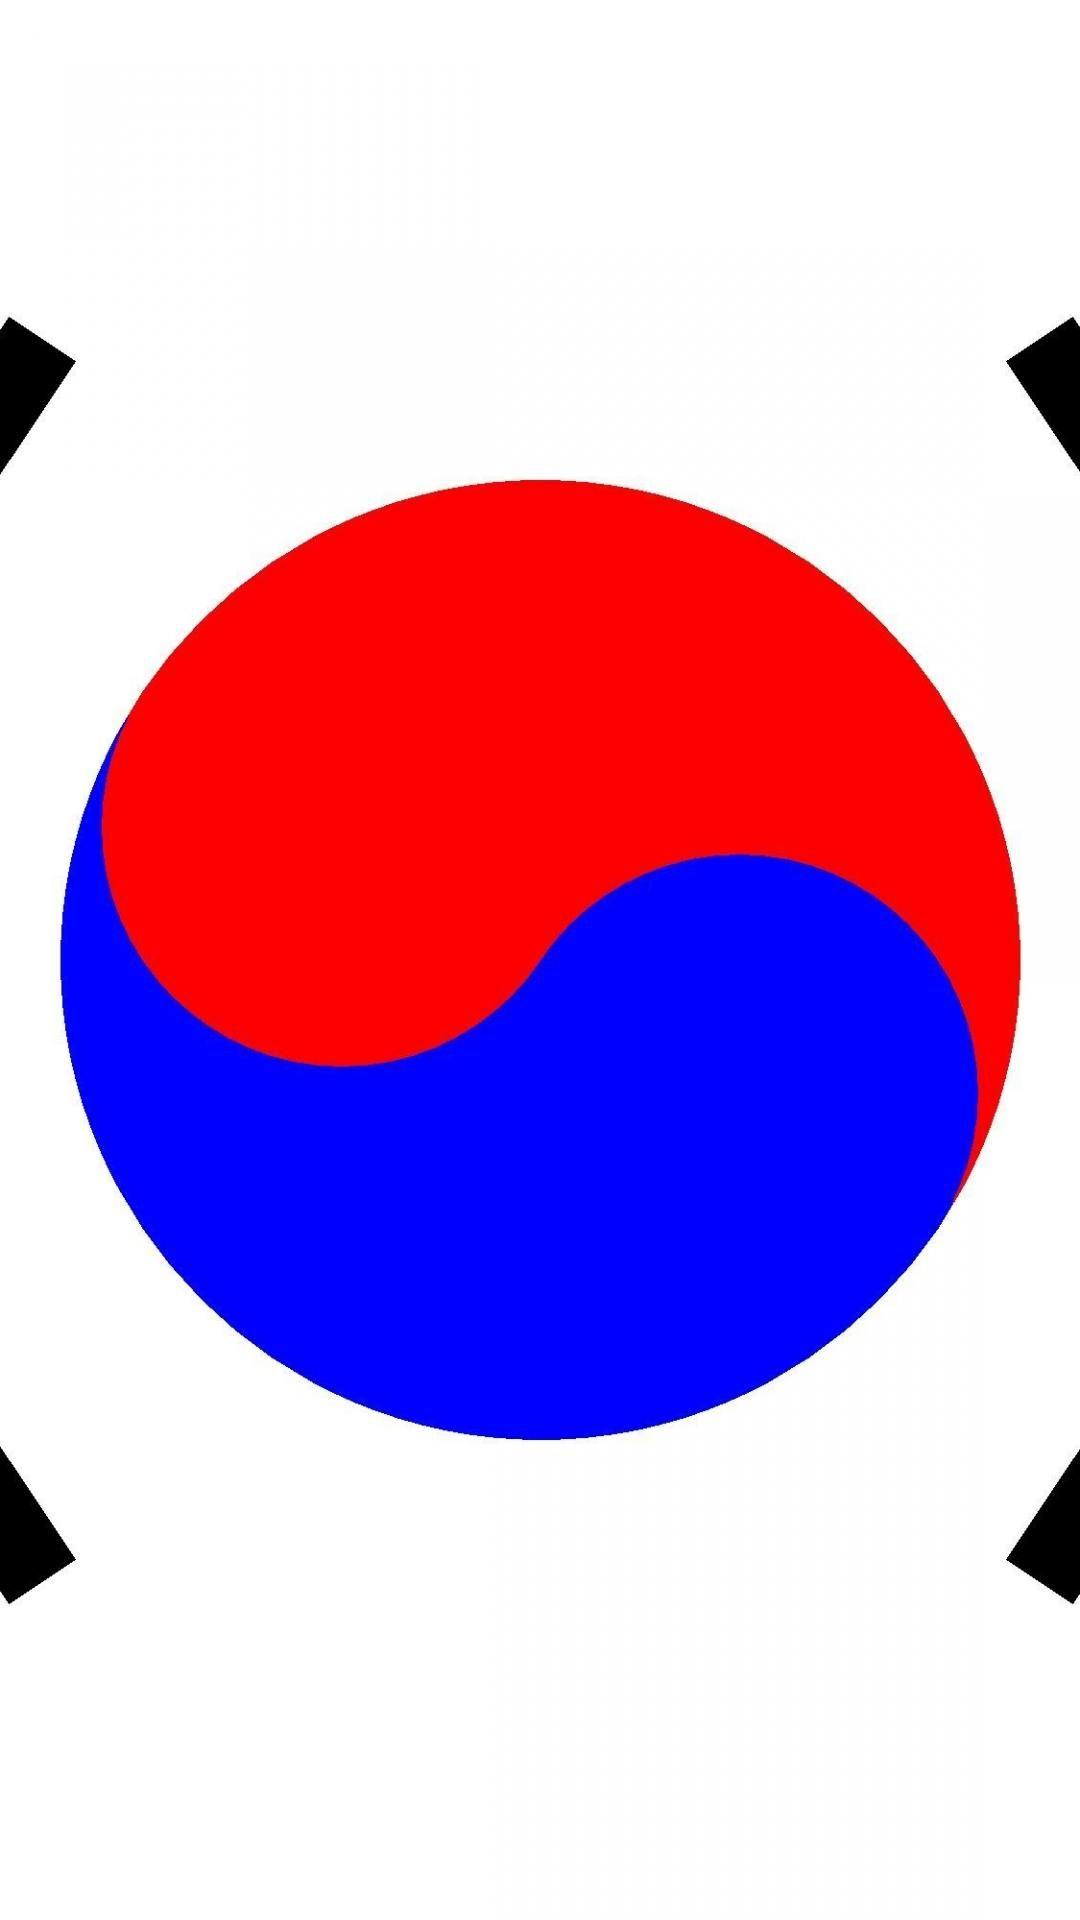 Flags korea south flag of southkorea wallpaper